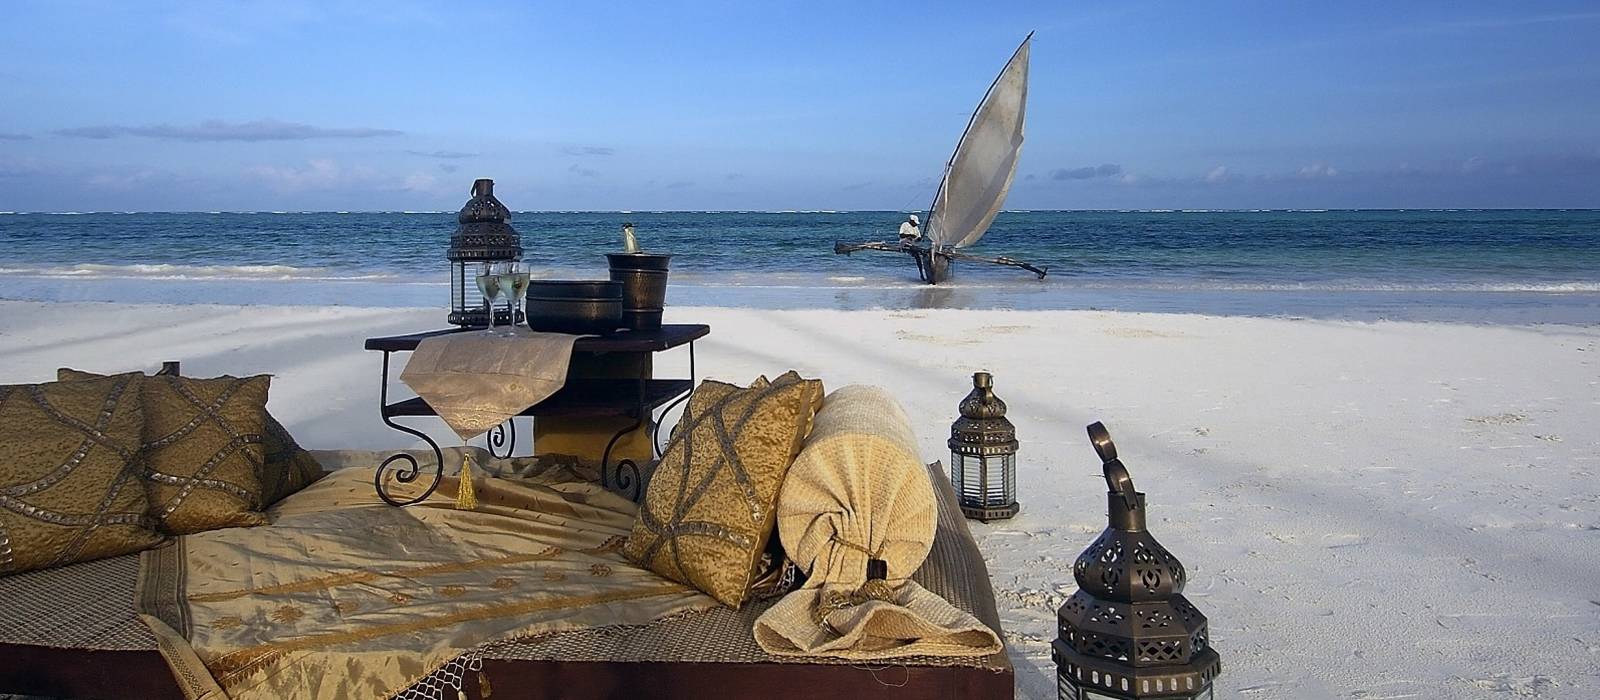 A holiday in Zanzibar